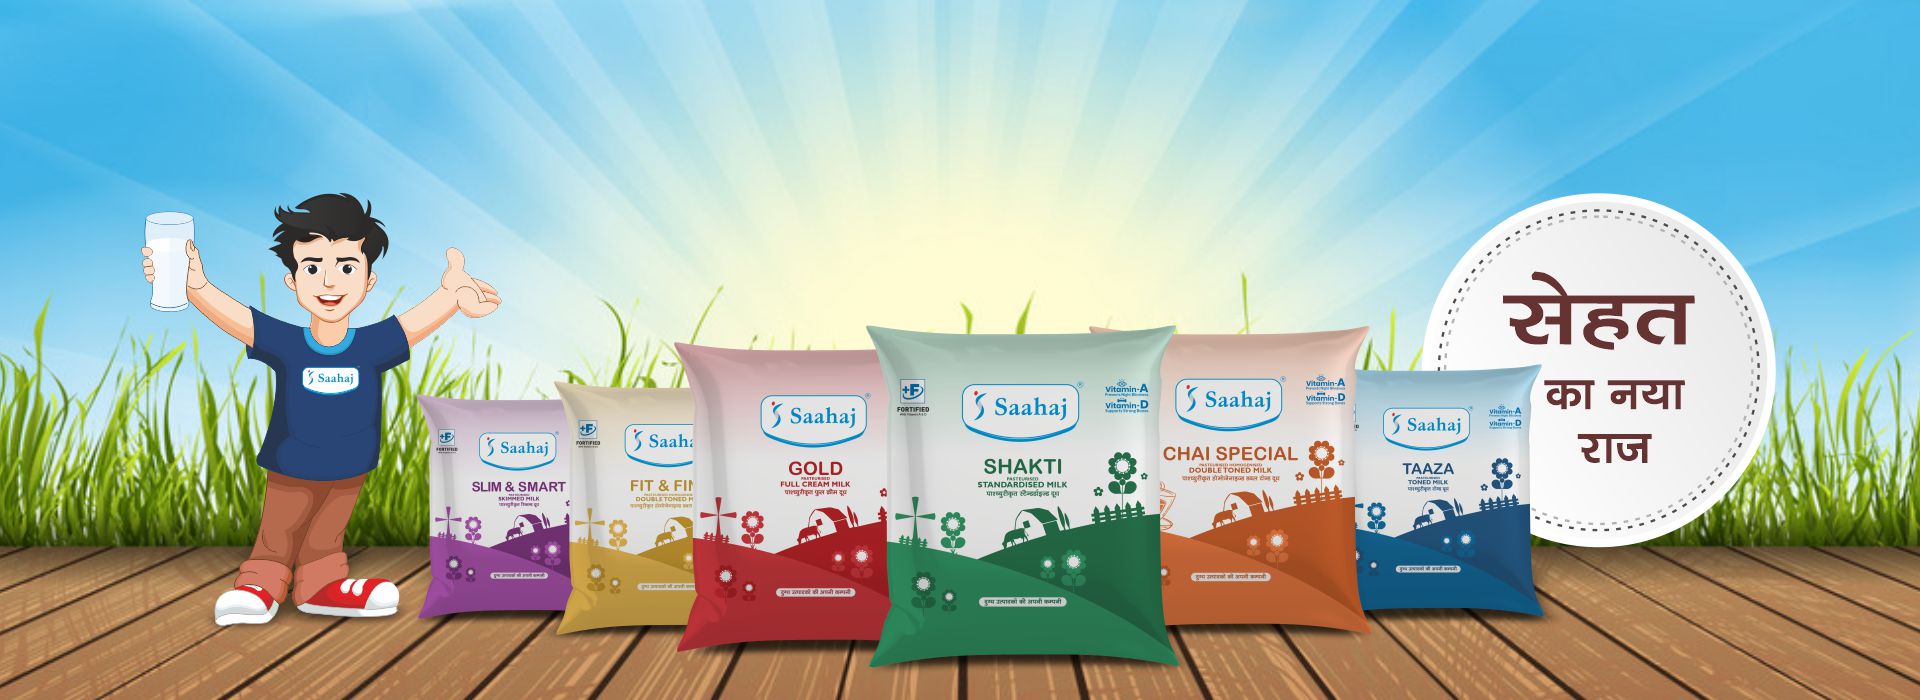 Saahaj - Milk Producer Company LTD India